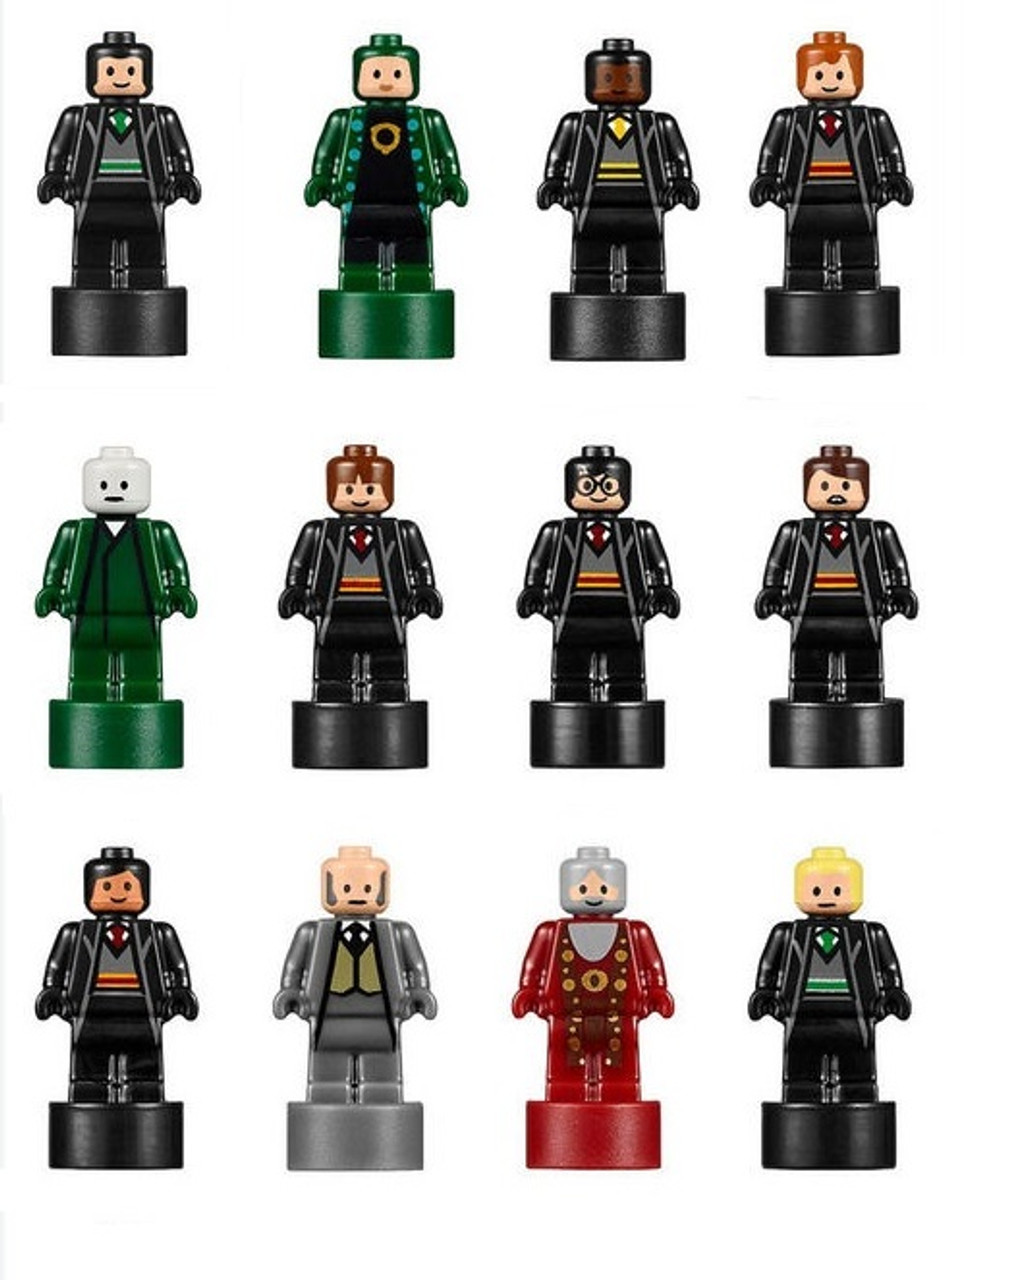 Lego Harry Potter Castello Of Hogwarts 71043 Lego